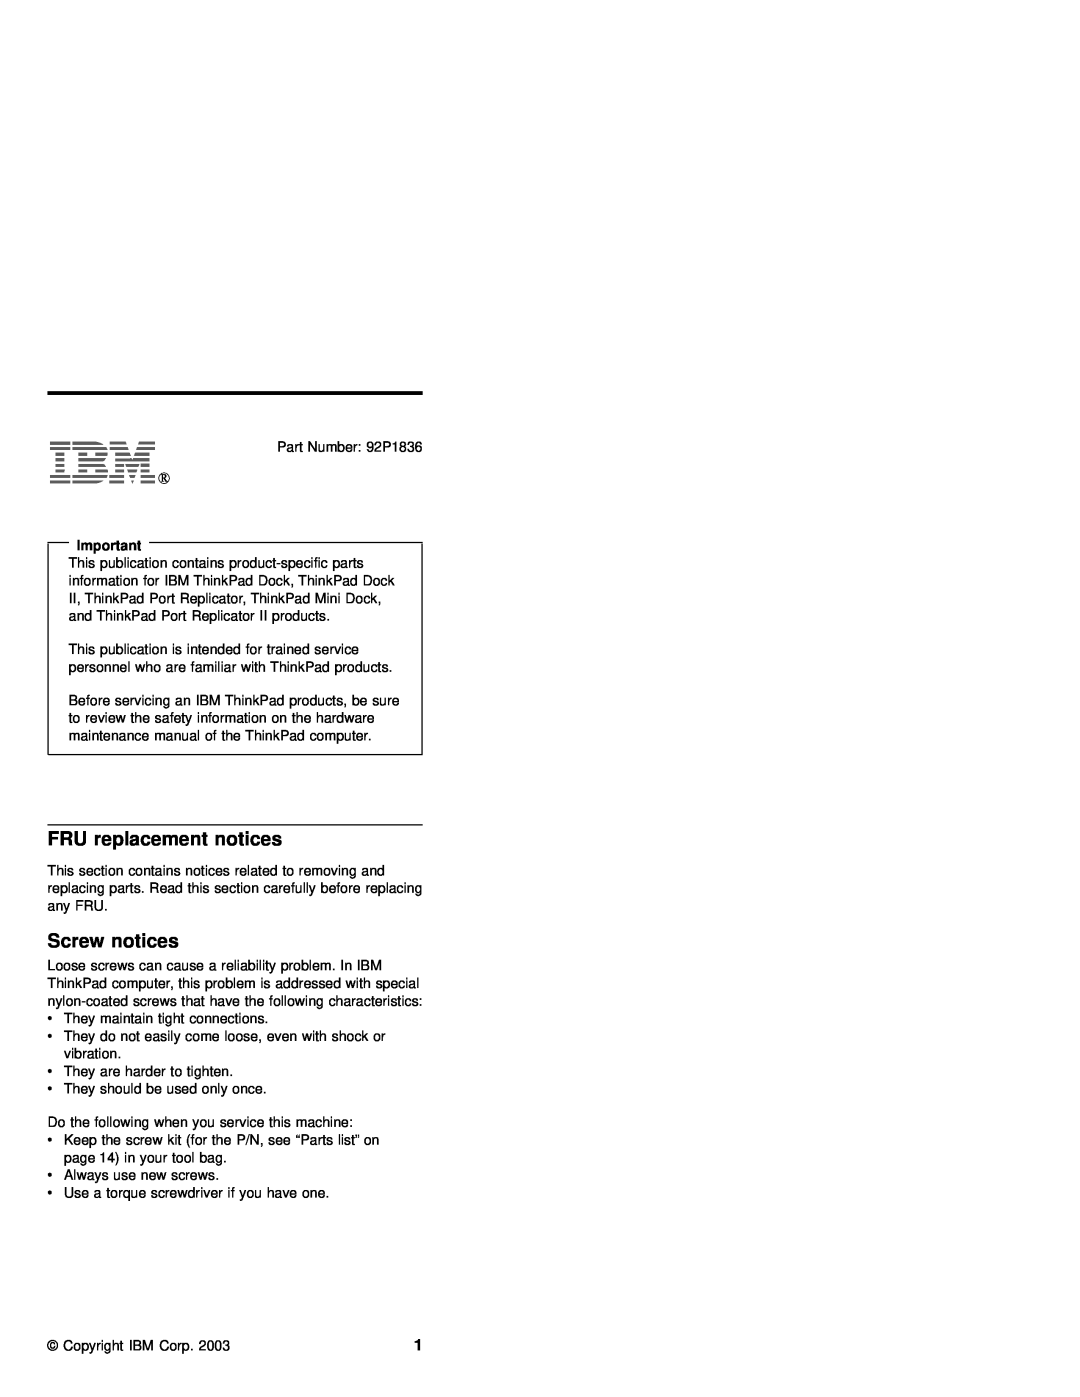 IBM 92P1836 manual FRU replacement notices, Screw notices 